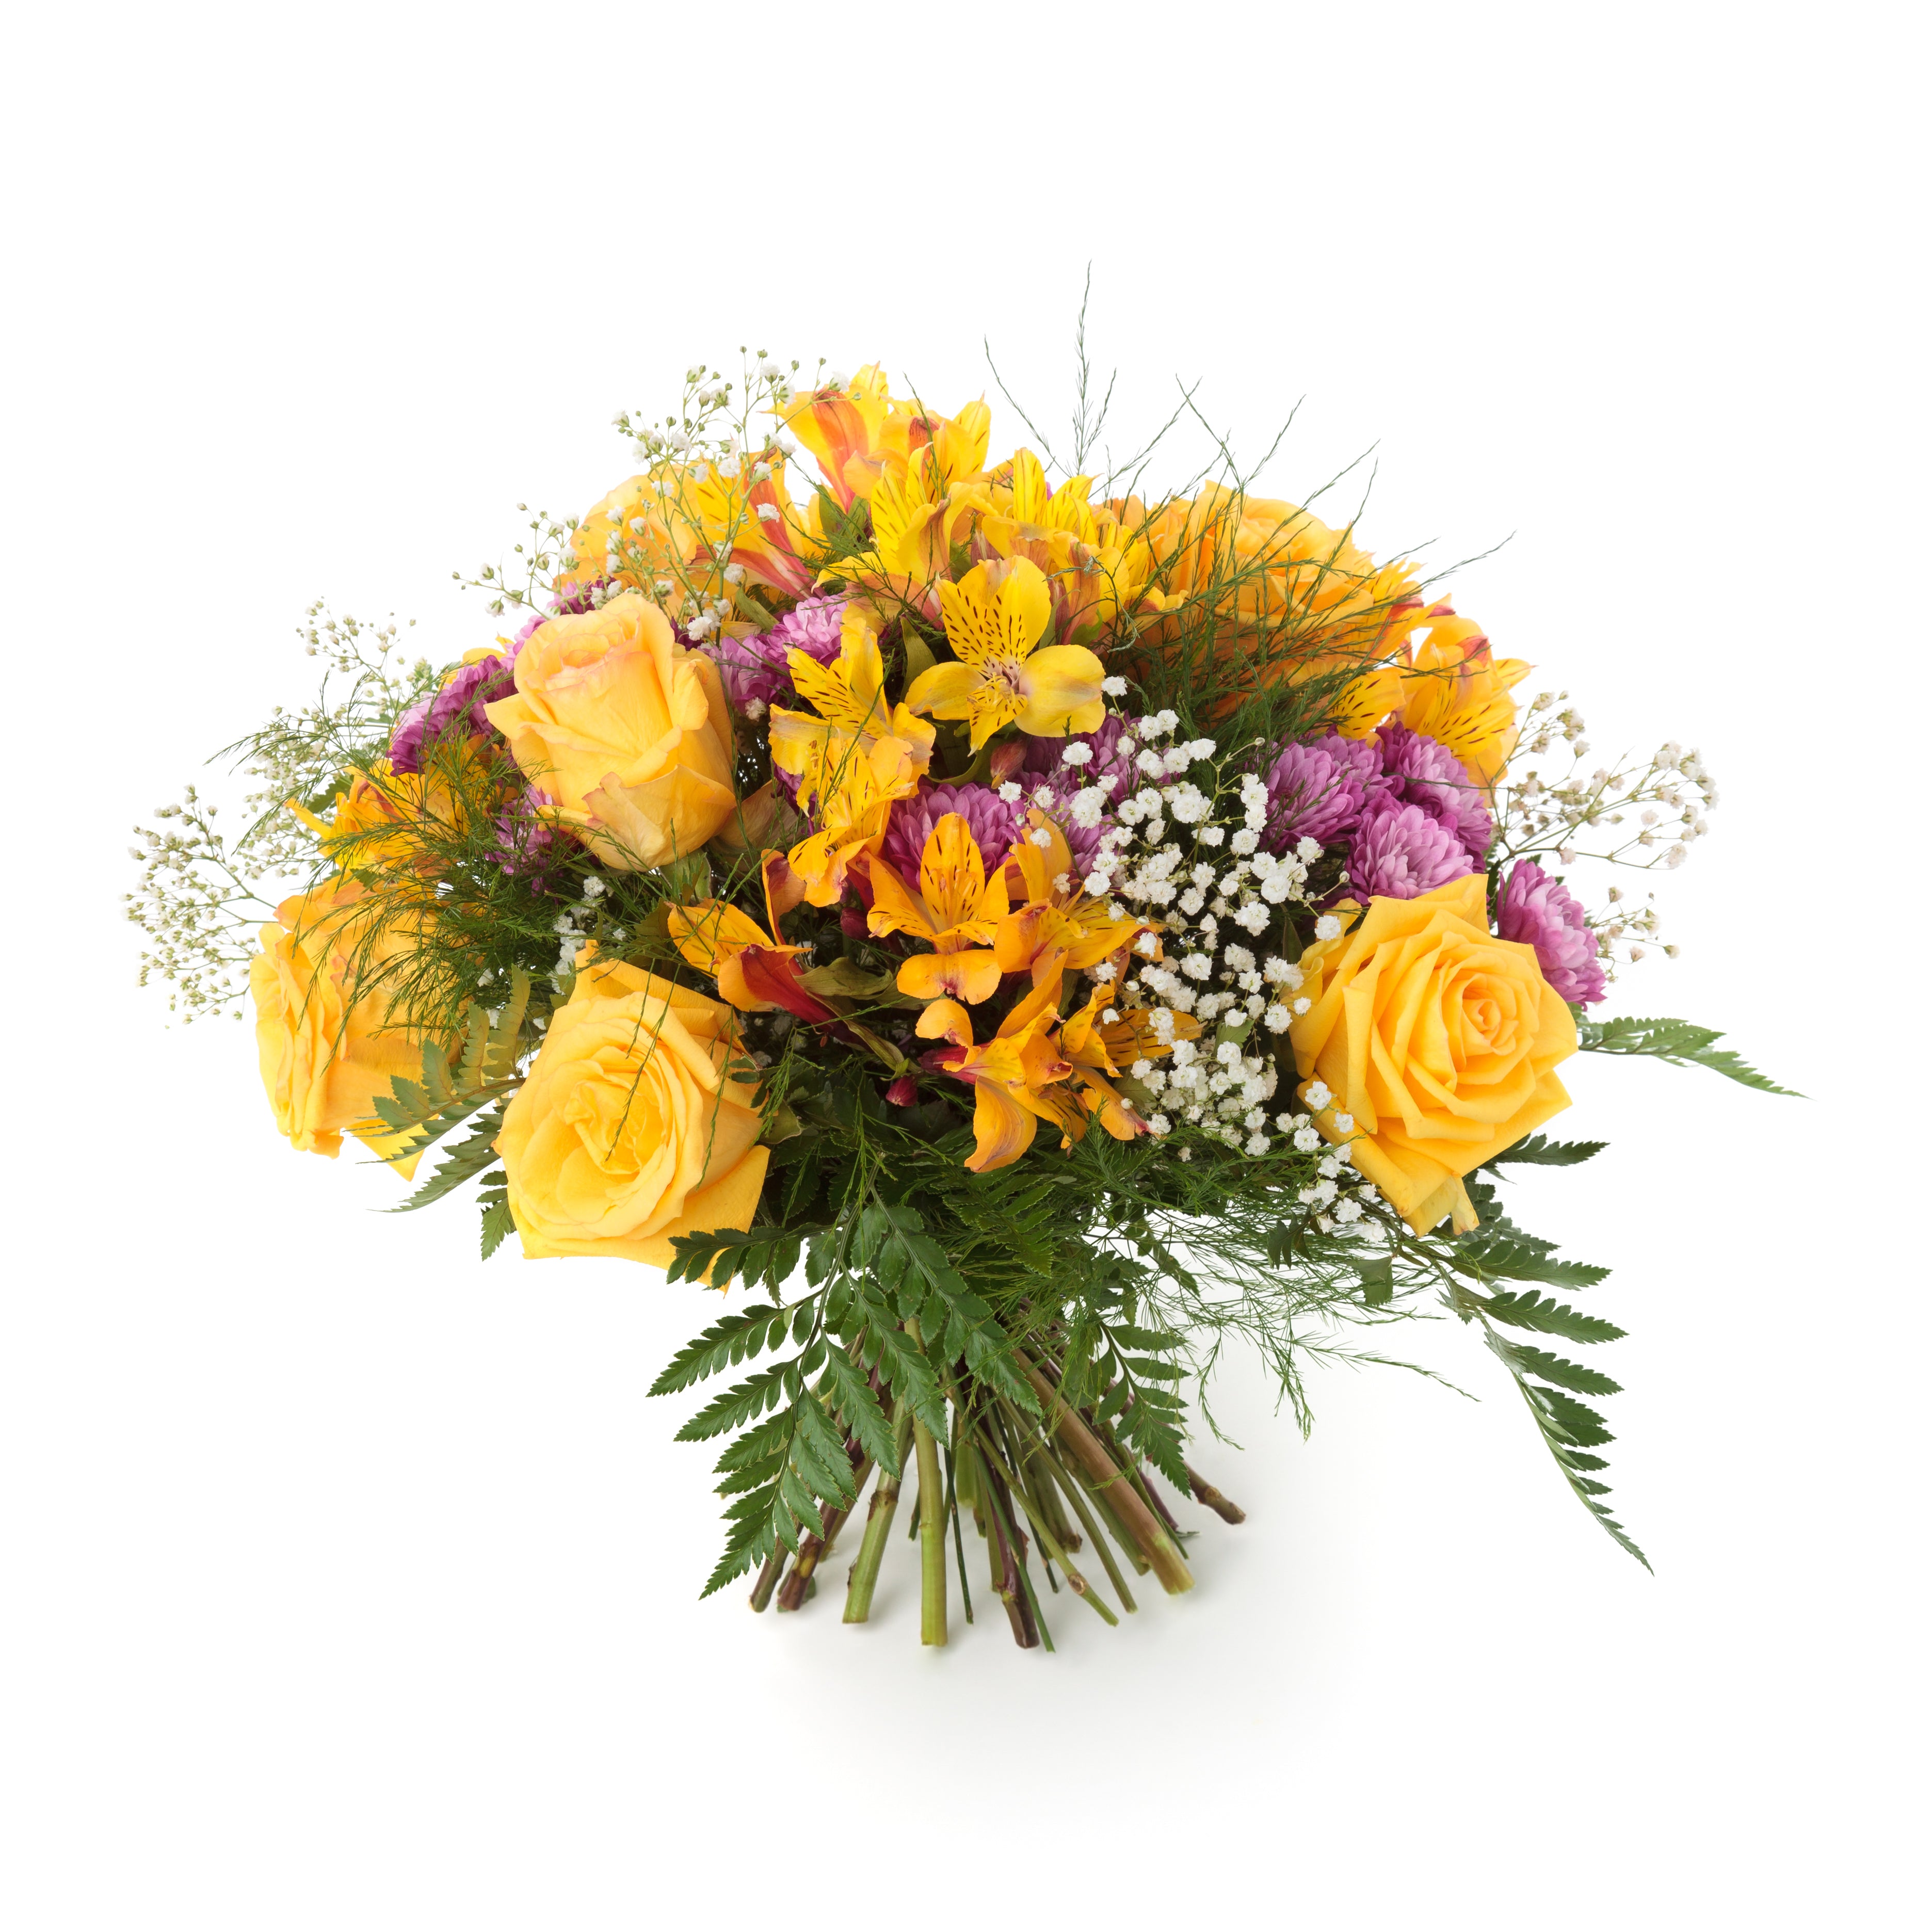 Florist Choice 2 - Floramor 